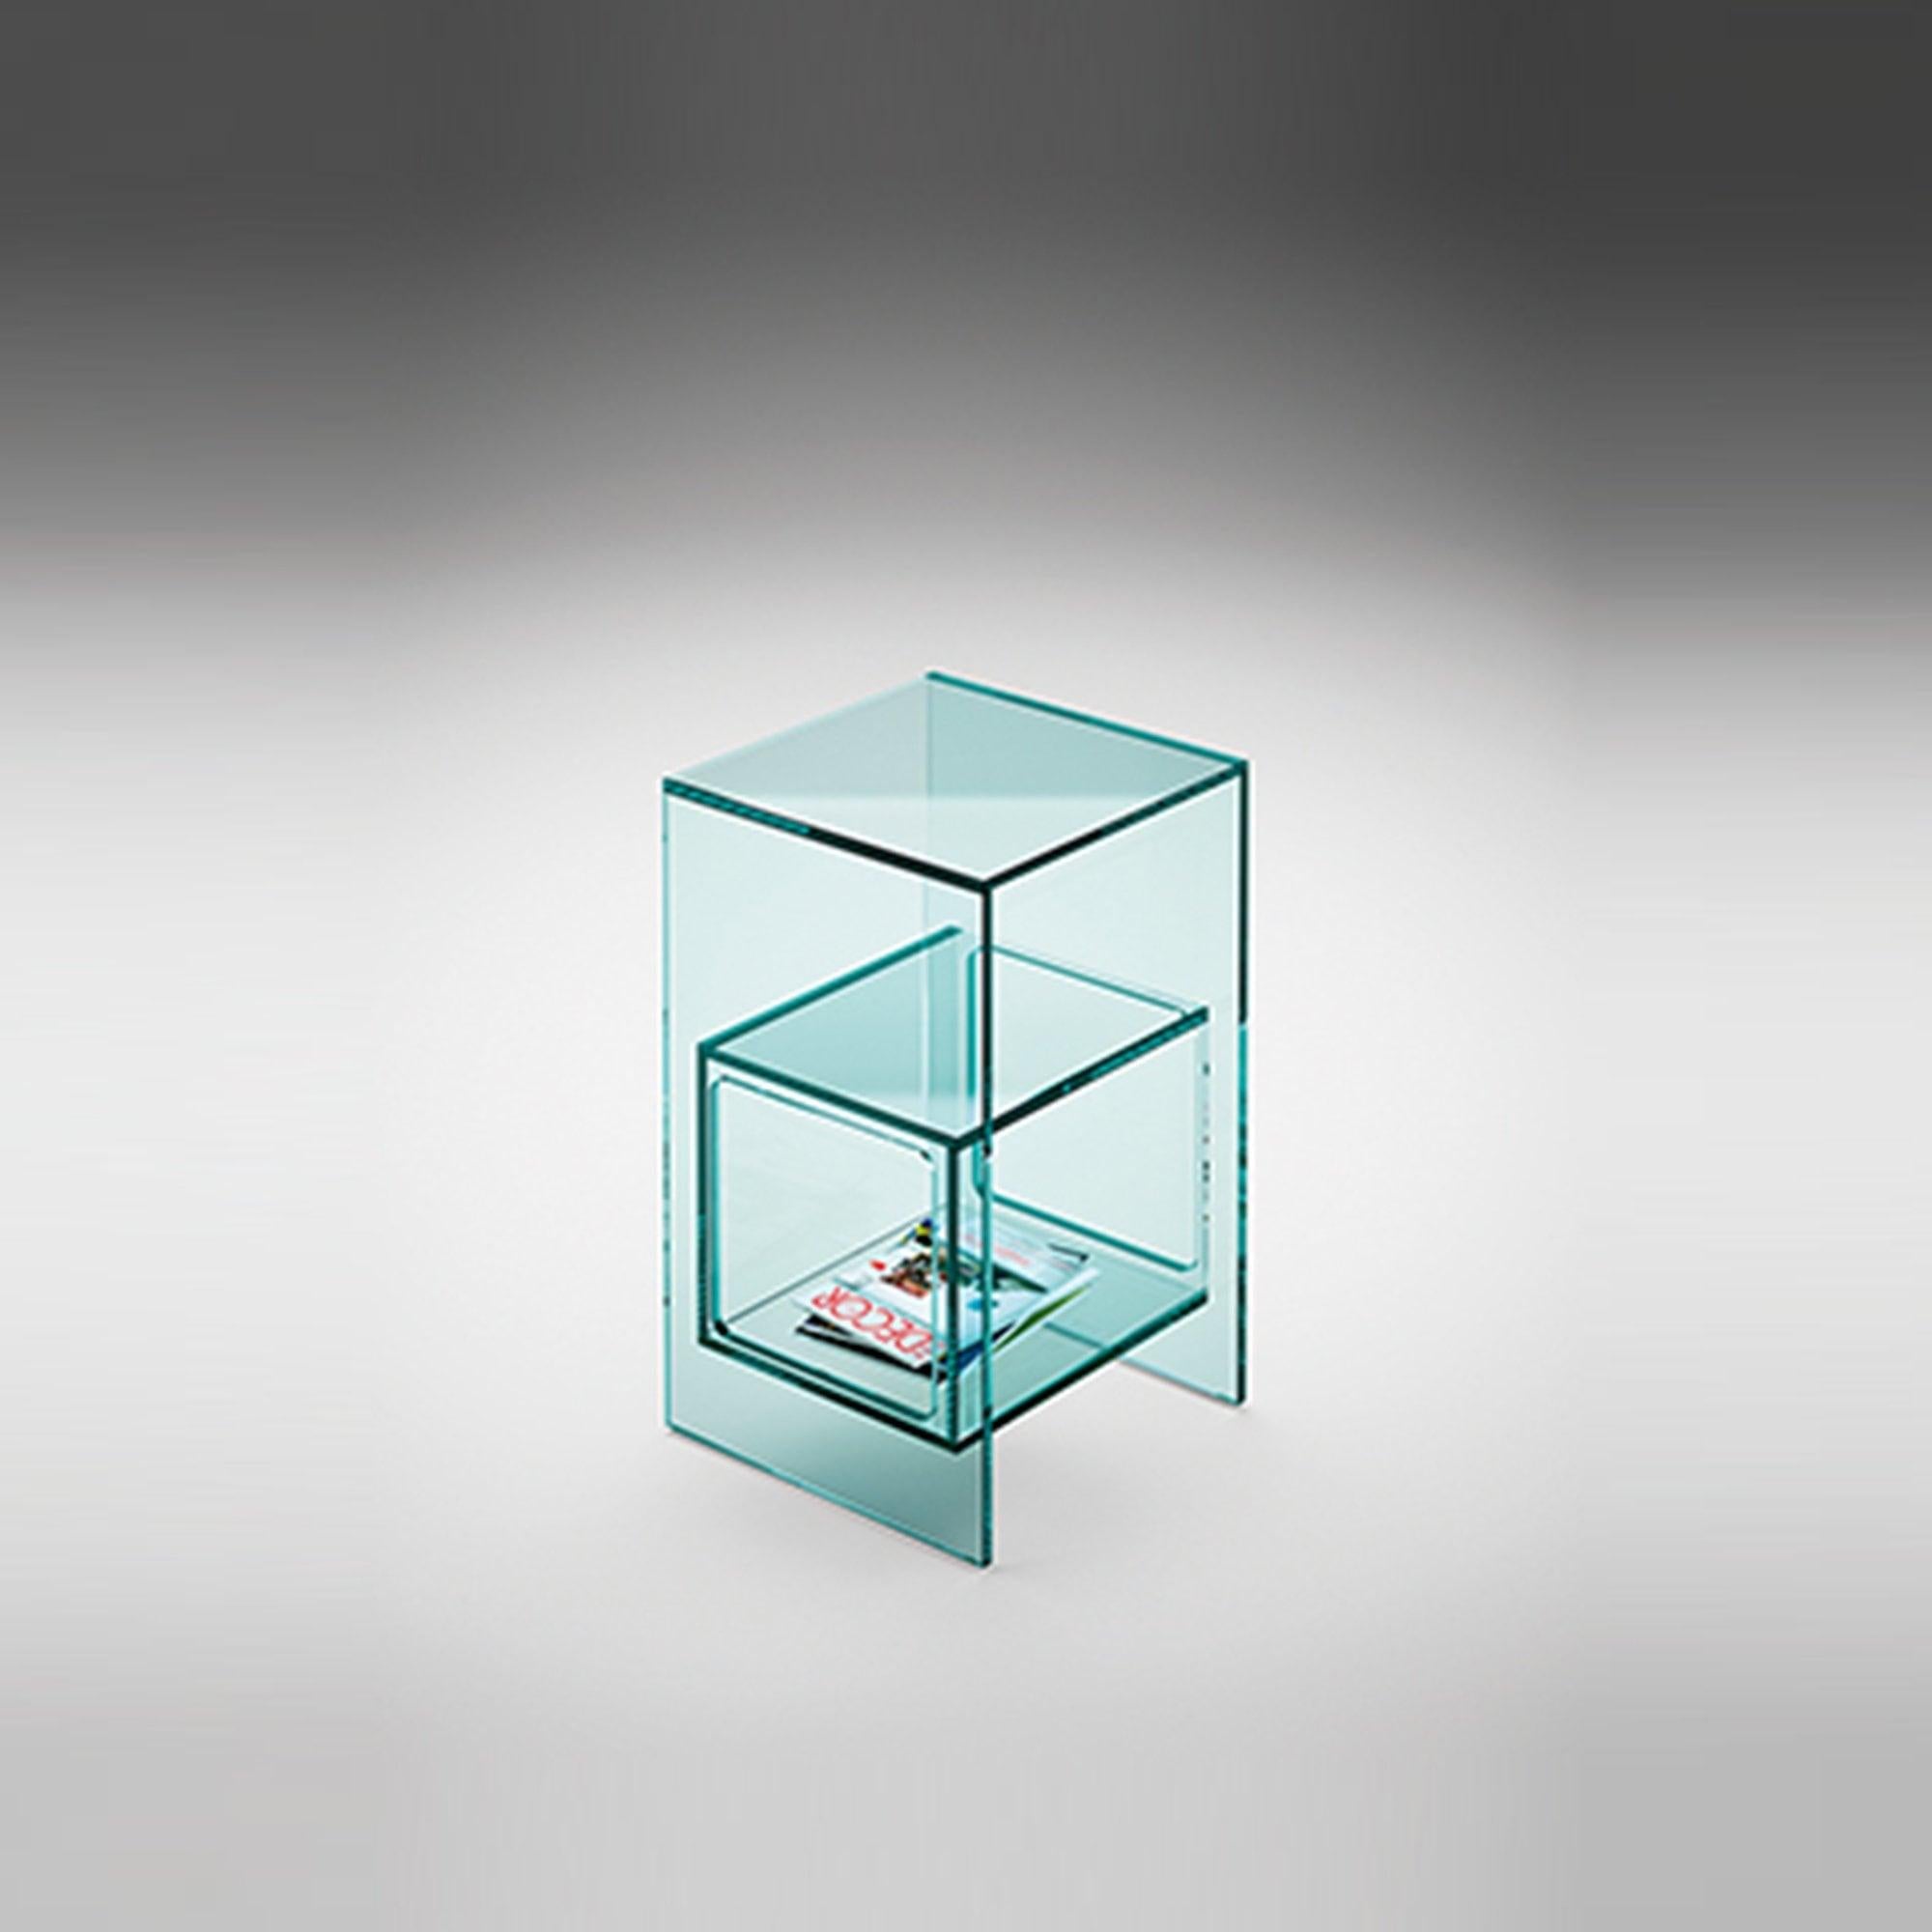 Table basse avec compartiment intérieur cubique en verre de 10 mm d'épaisseur. Disponible en différentes finitions. Structure et cube en verre transparent.
 